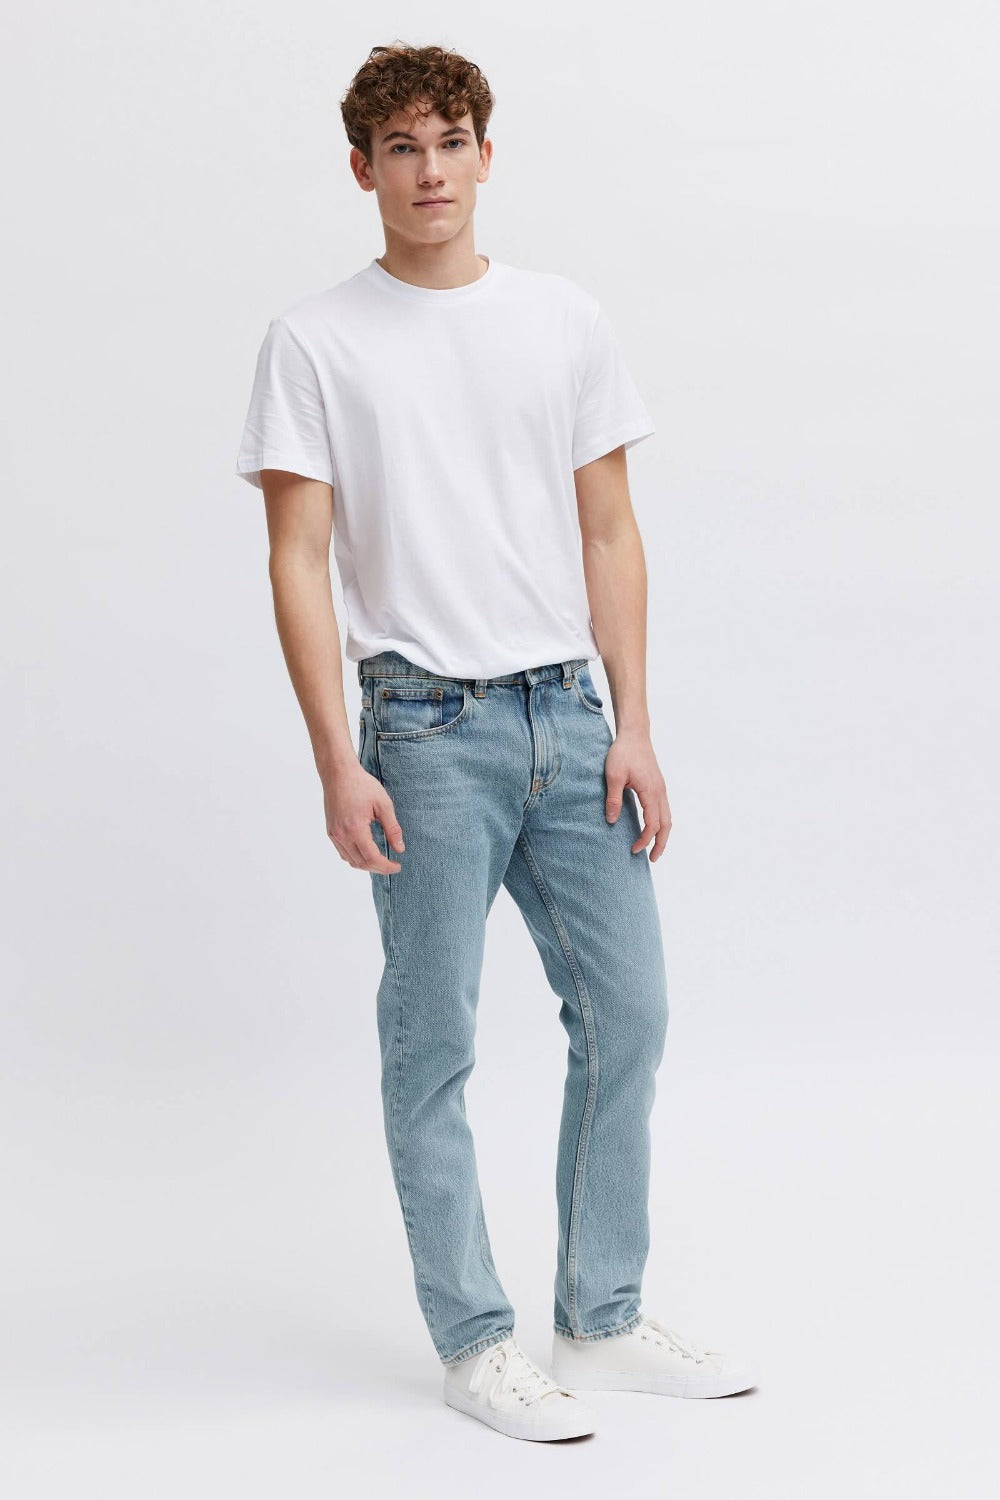 Lease Jeans - Men's Denim Fashion